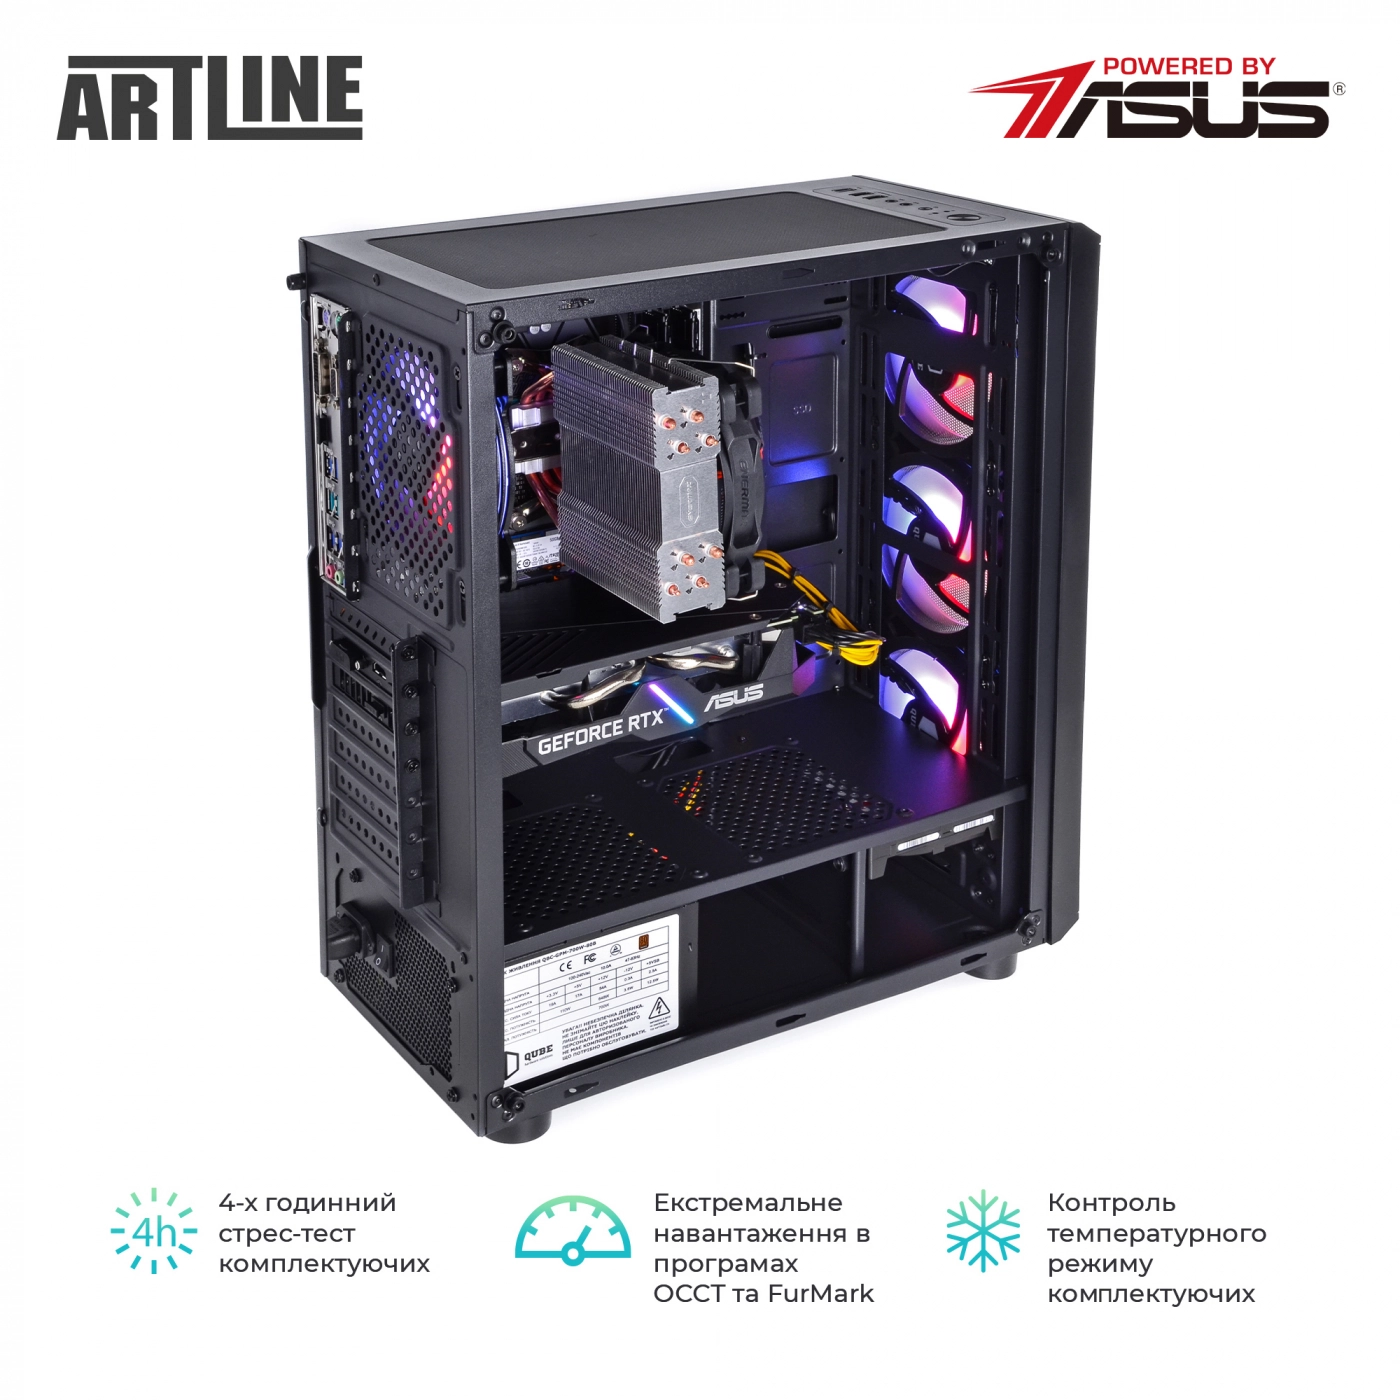 Купить Компьютер ARTLINE Gaming X65v34 - фото 8